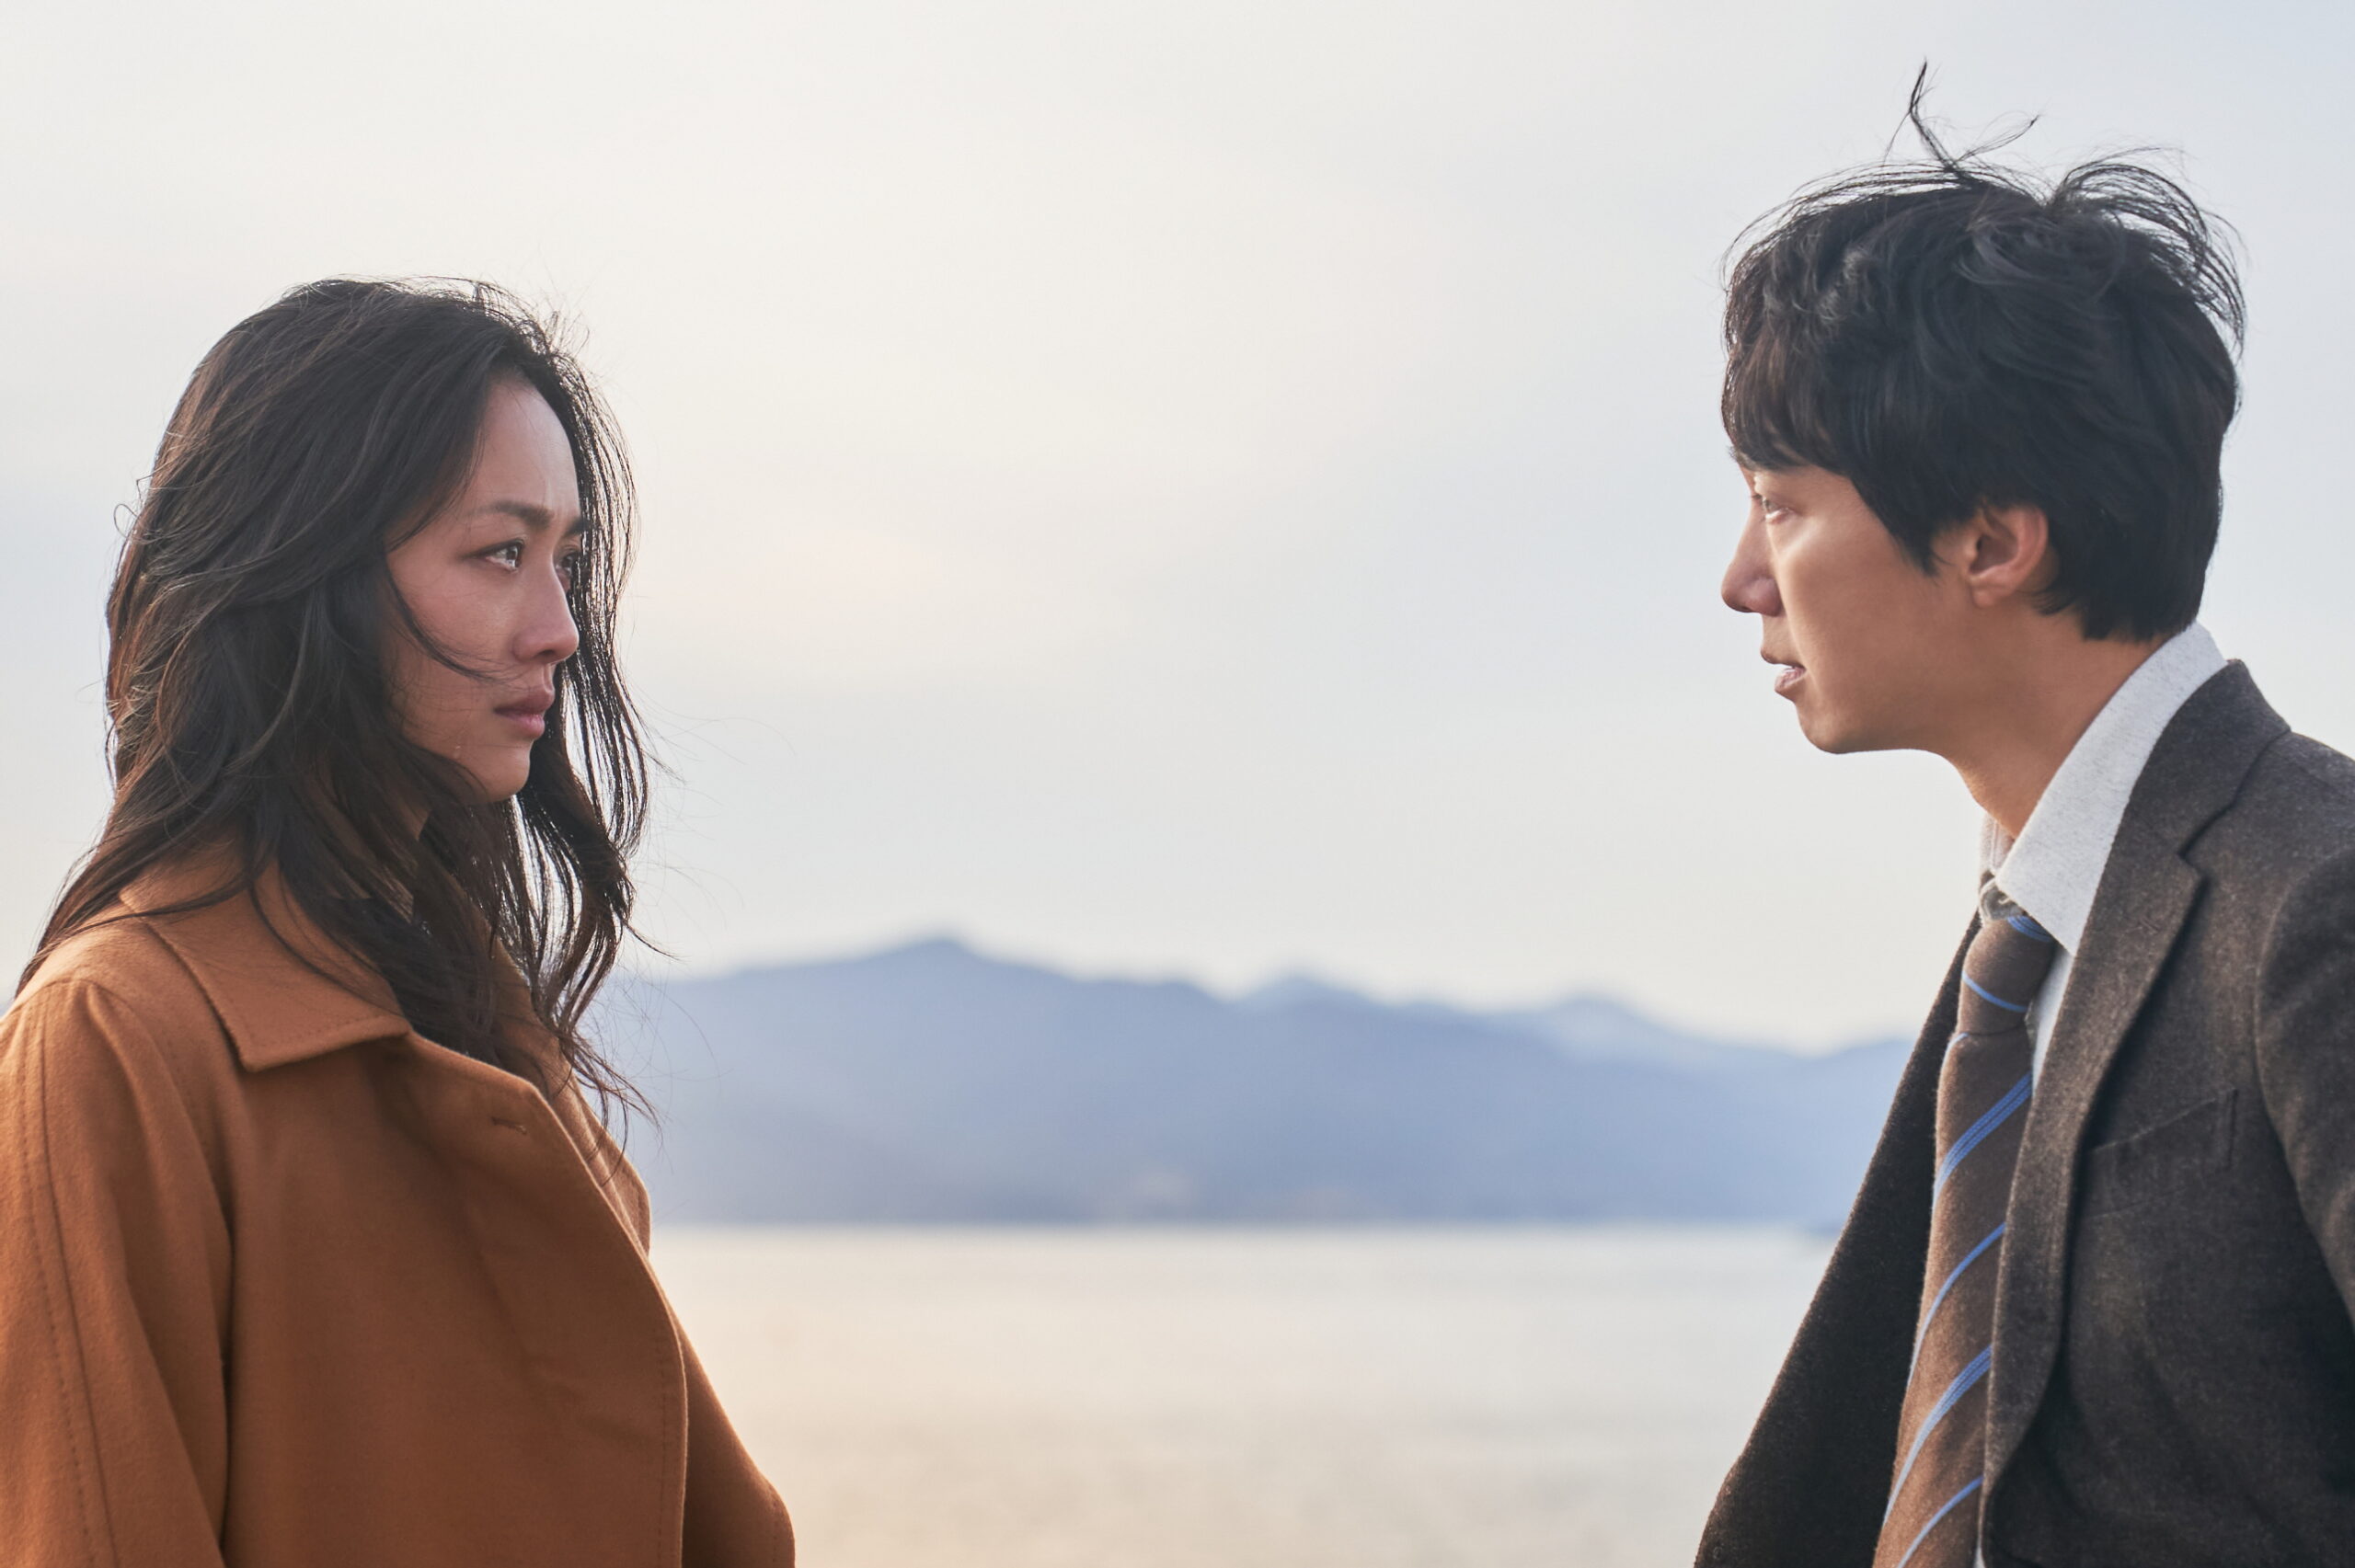 韓国初の女性監督の失われたフィルムをめぐって映画と人生が交差する感動作『オマージュ』2023年3月10日公開決定